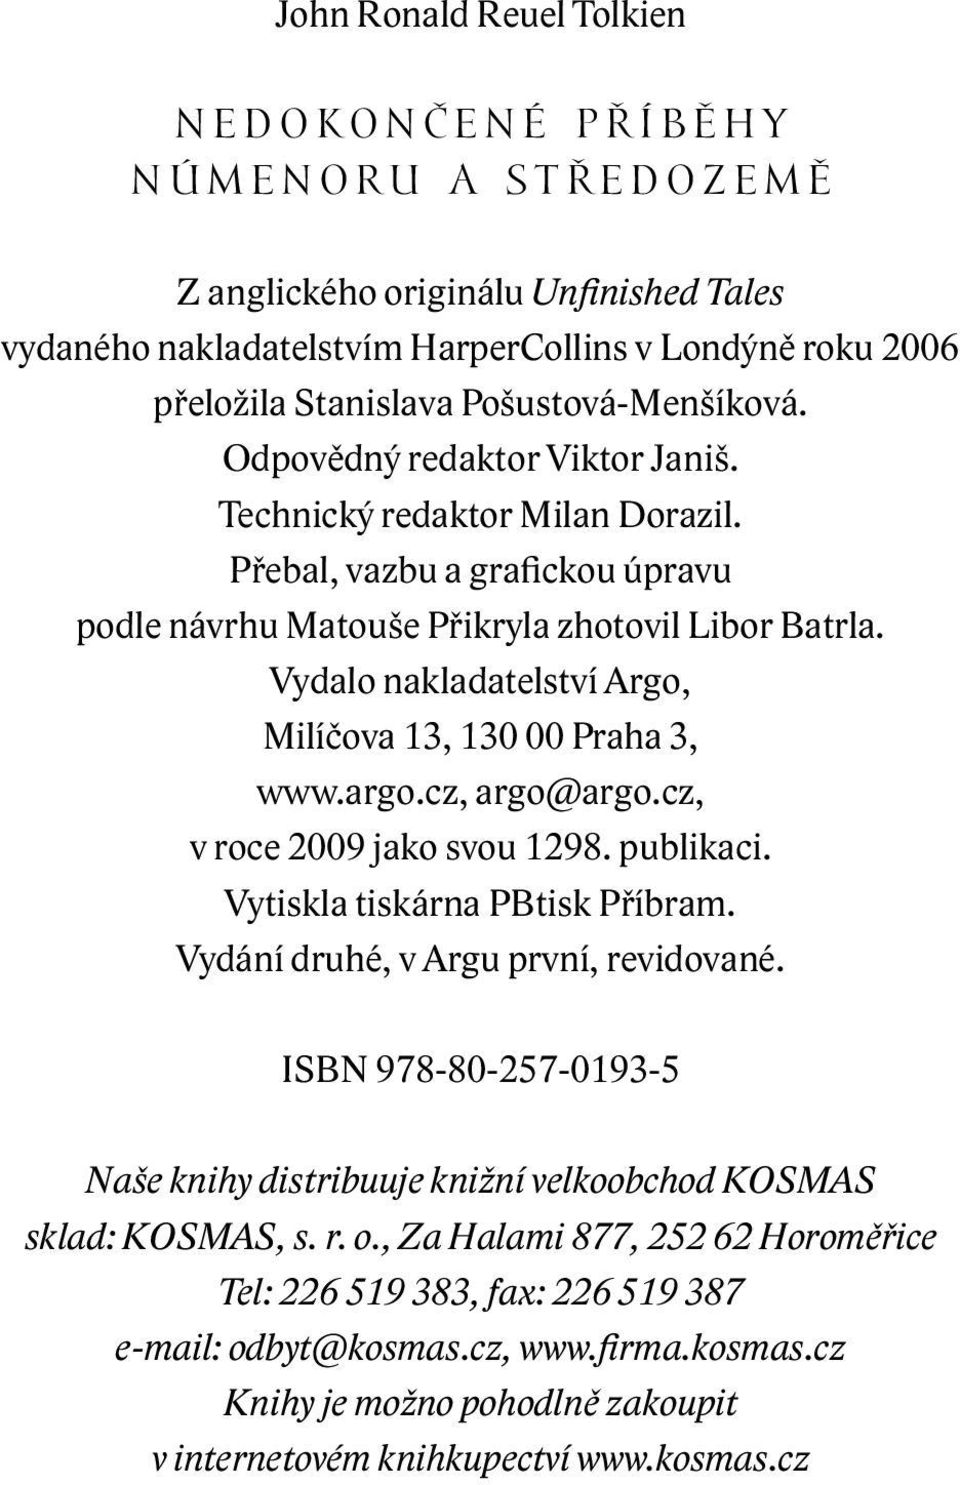 Vydalo nakladatelství Argo, Milíčova 13, 130 00 Praha 3, www.argo.cz, argo@argo.cz, v roce 2009 jako svou 1298. publikaci. Vytiskla tiskárna PBtisk Příbram. Vydání druhé, v Argu první, revidované.